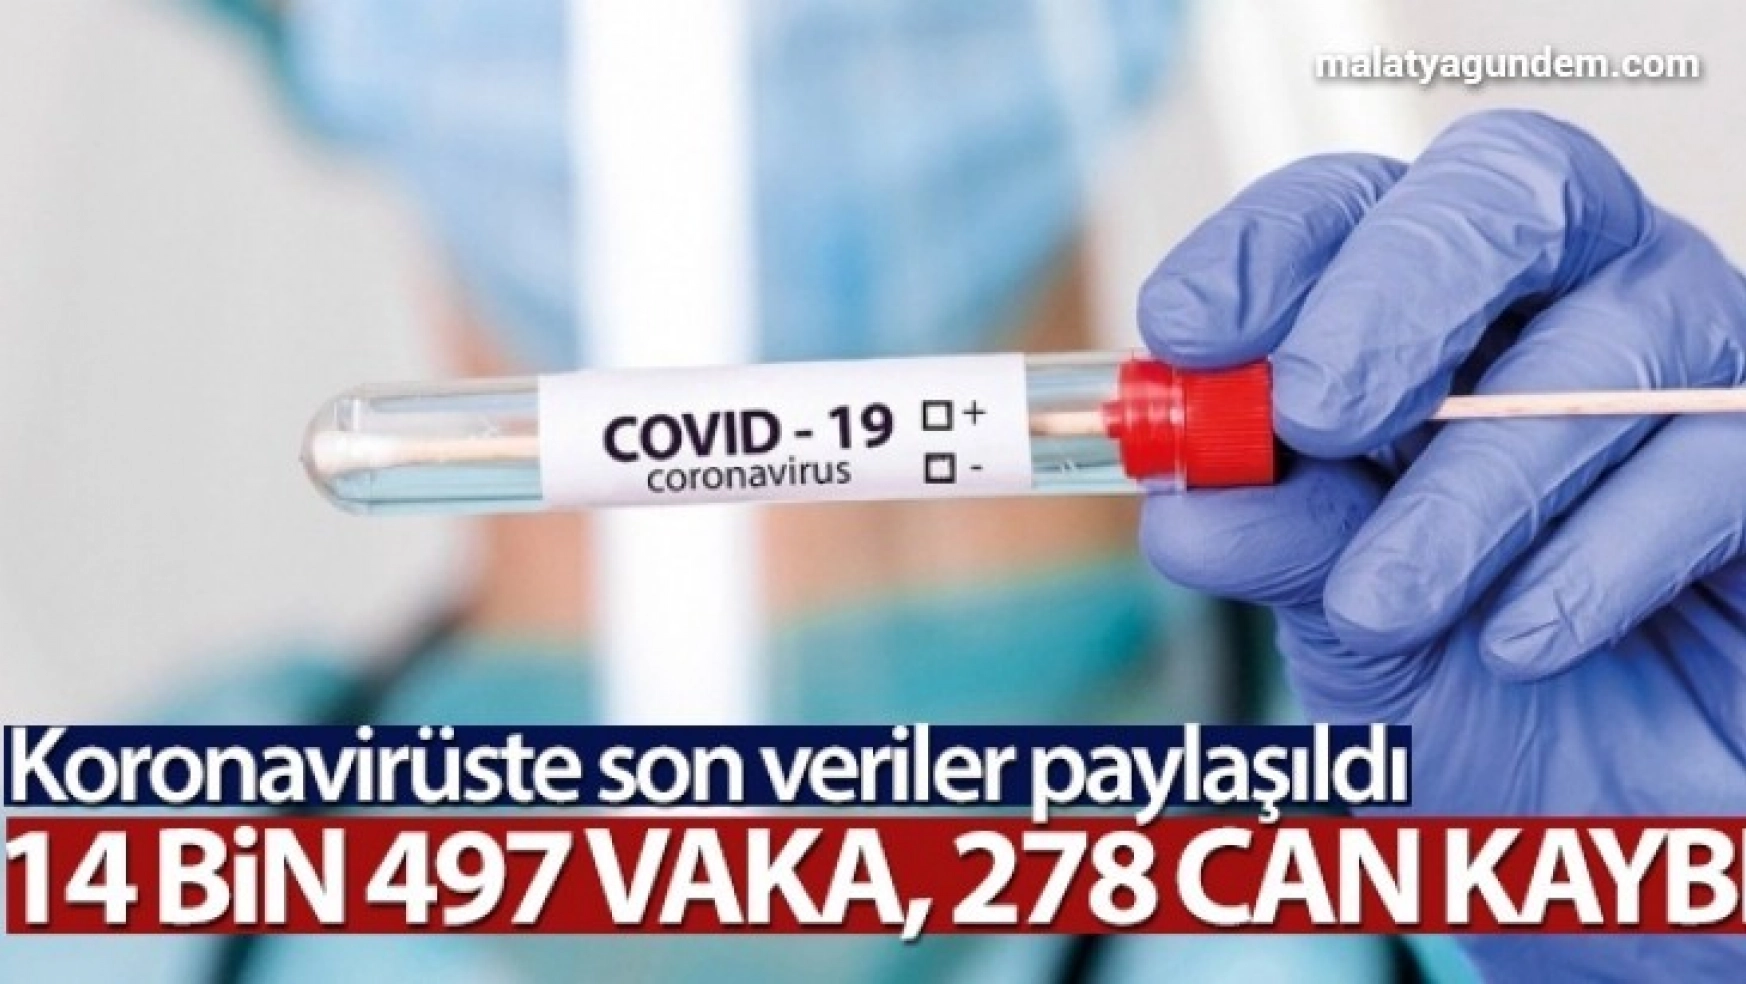 Türkiye'de son 24 saatte 14.497 koronavirüs vakası tespit edildi